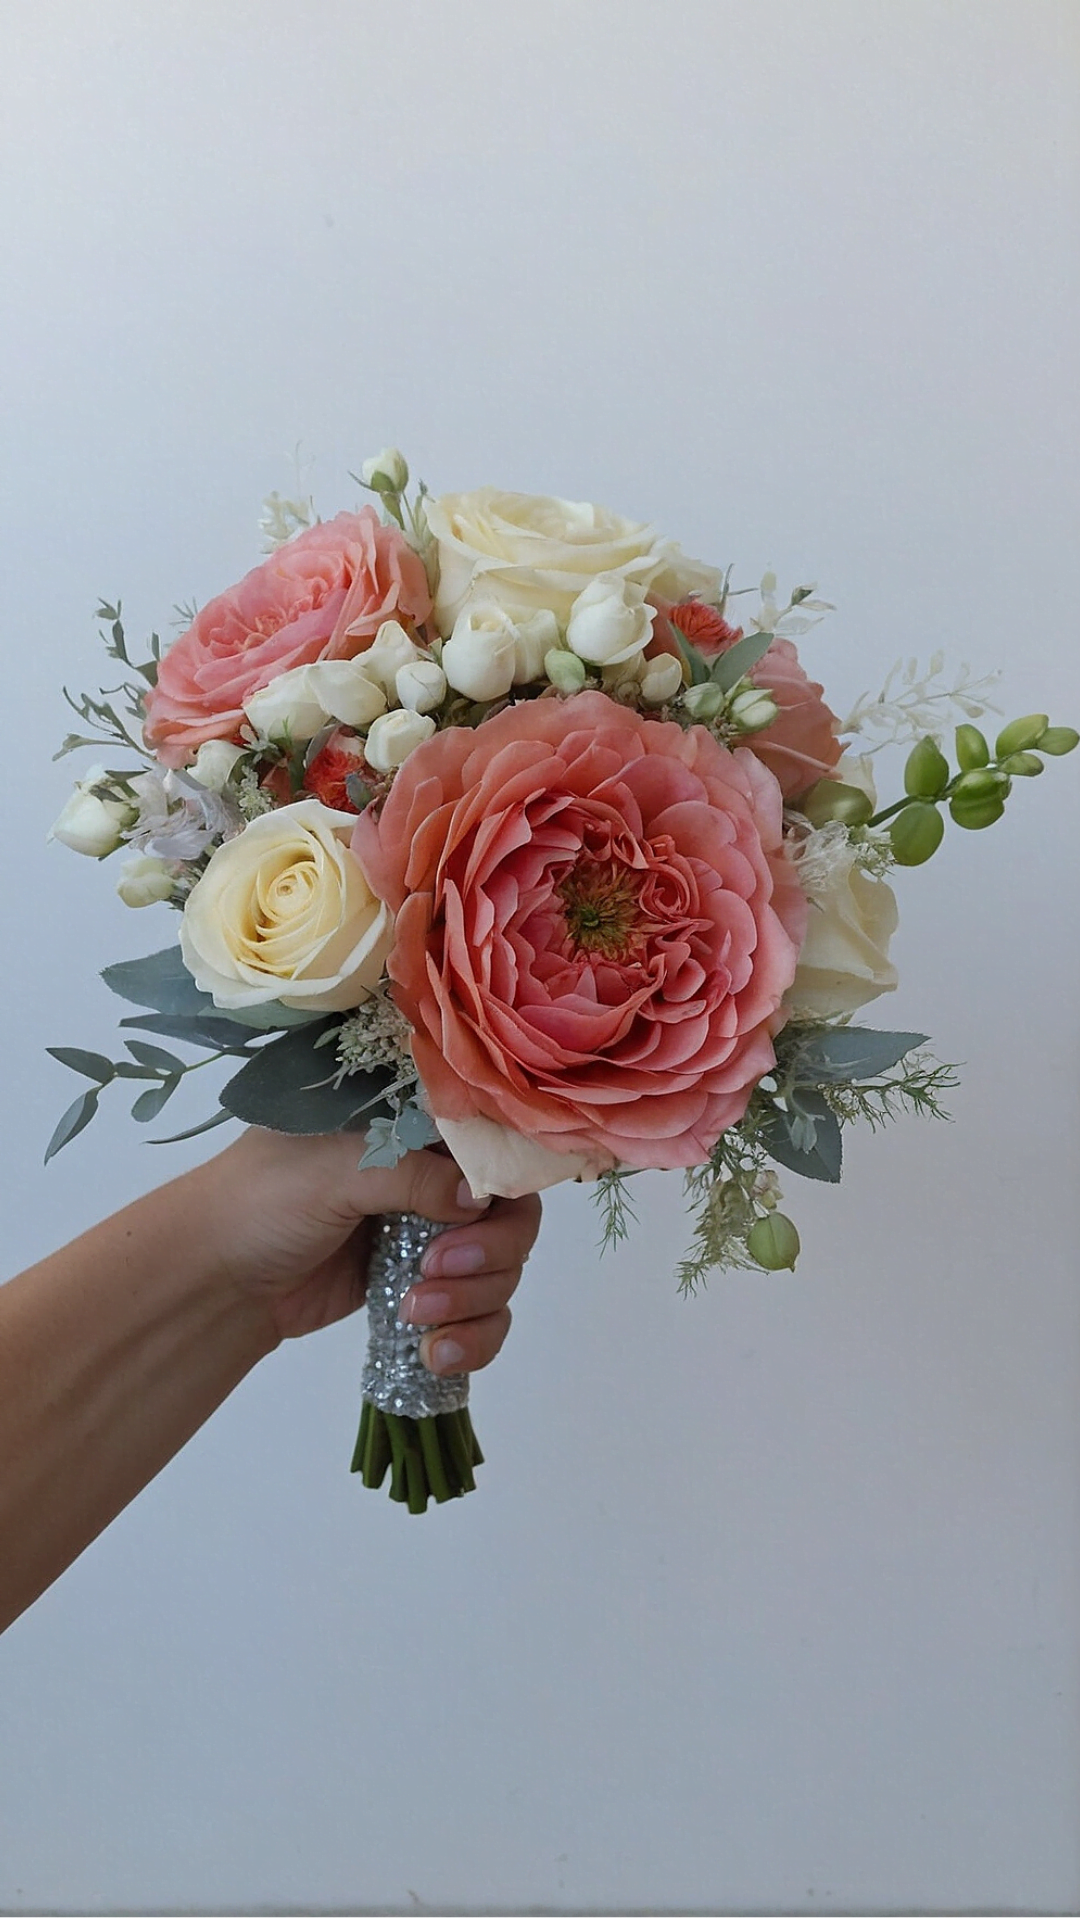 Vibrant Floral Arrangements: Creative Prom Bouquets